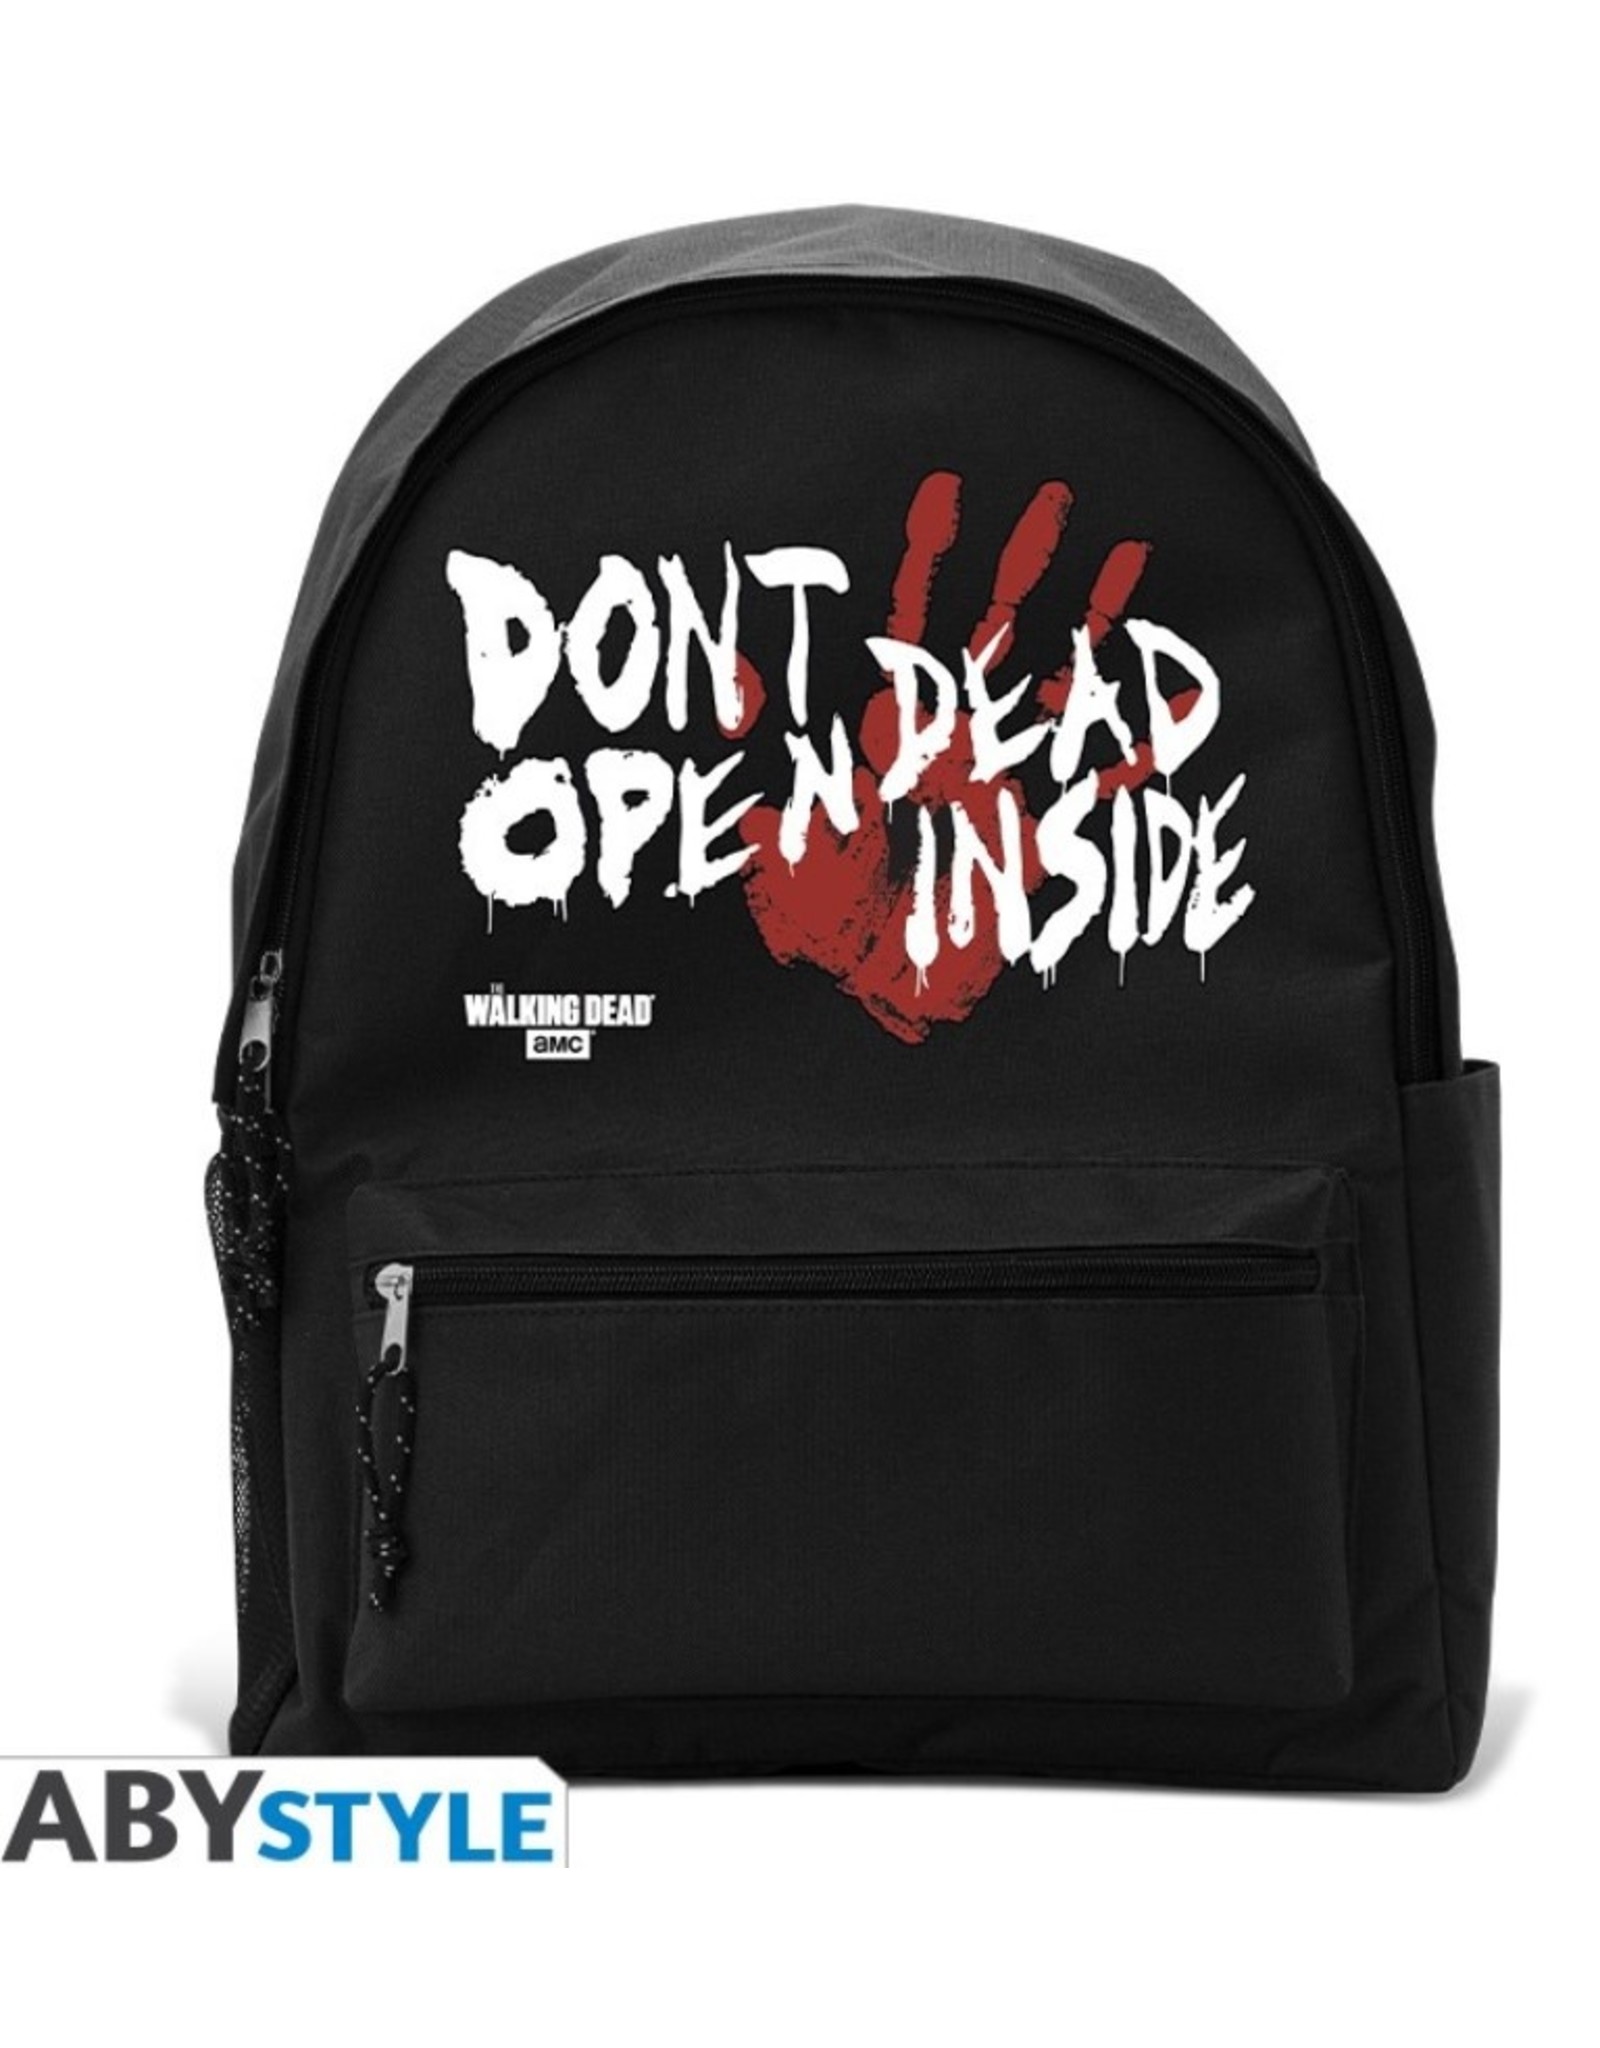 Walking Dead Merchandise - The Walking Dead Backpack "Dead Inside" - 42cm